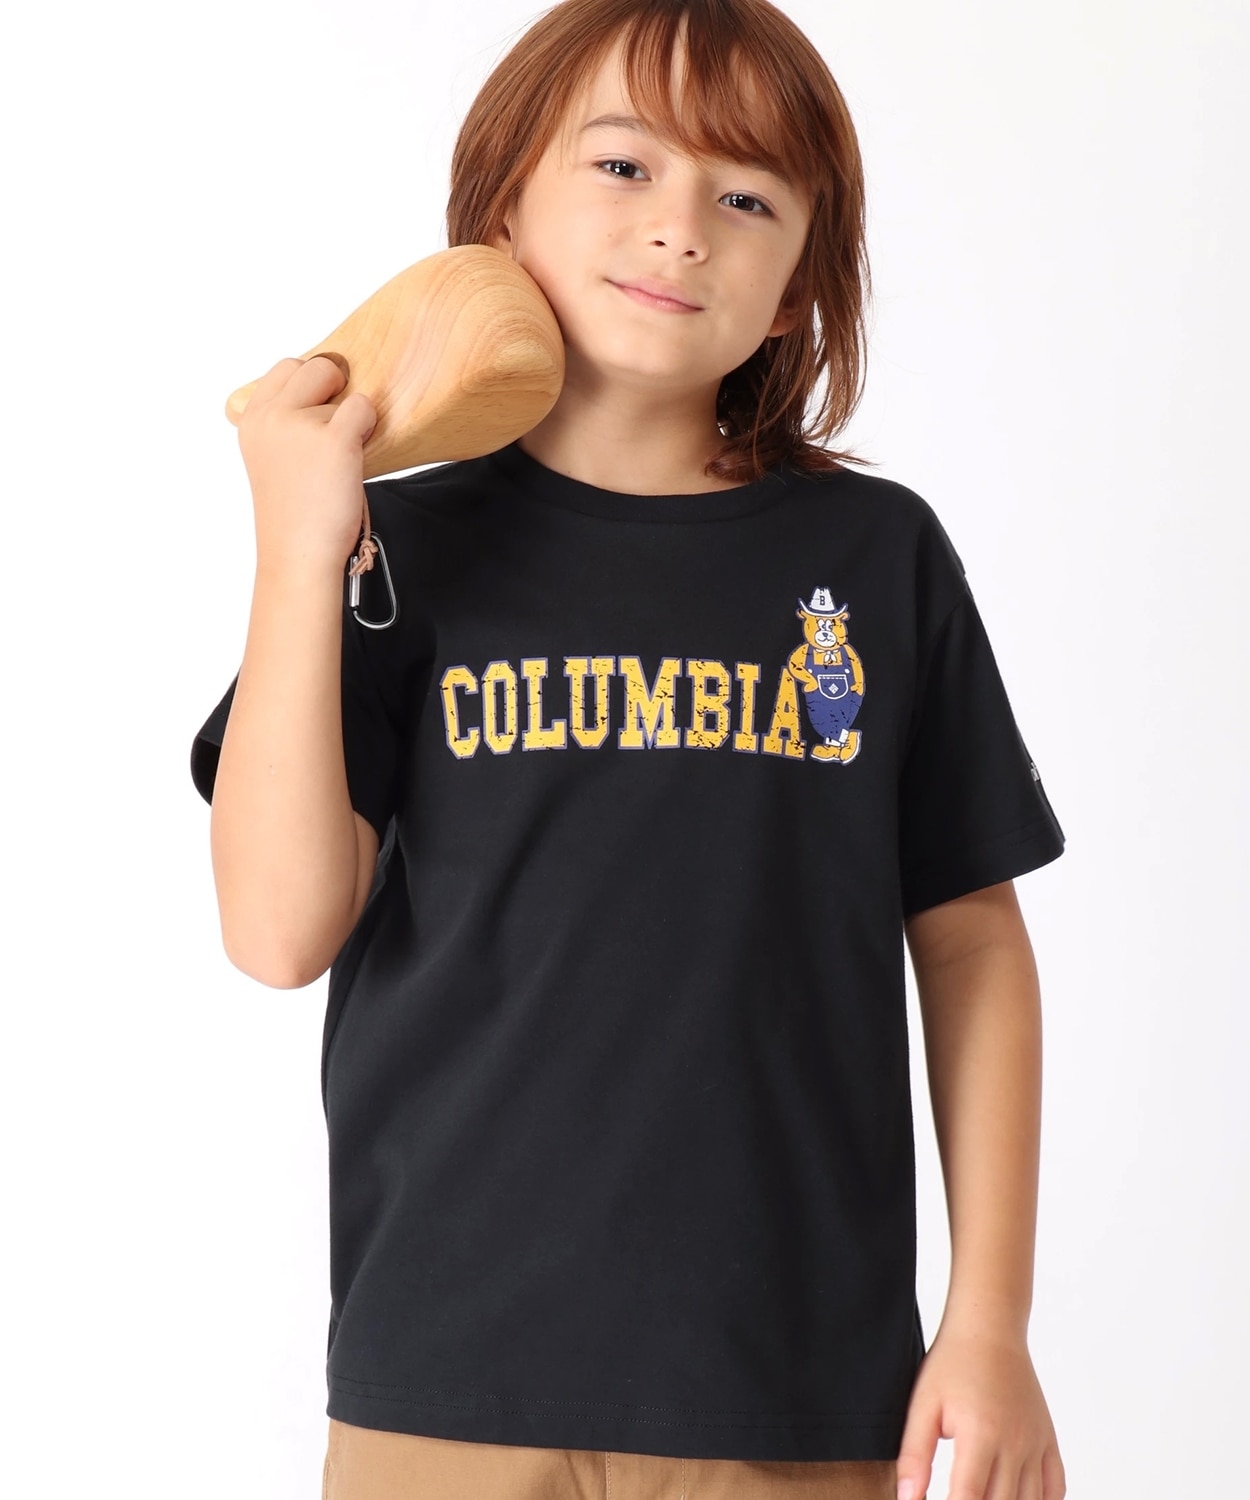 コロンビア公式サイトツキャノンアイルショートスリーブTシャツ(XXS Black): アウトレット商品以外用│アウトドア用品のコロンビア スポーツウェア公式通販サイト